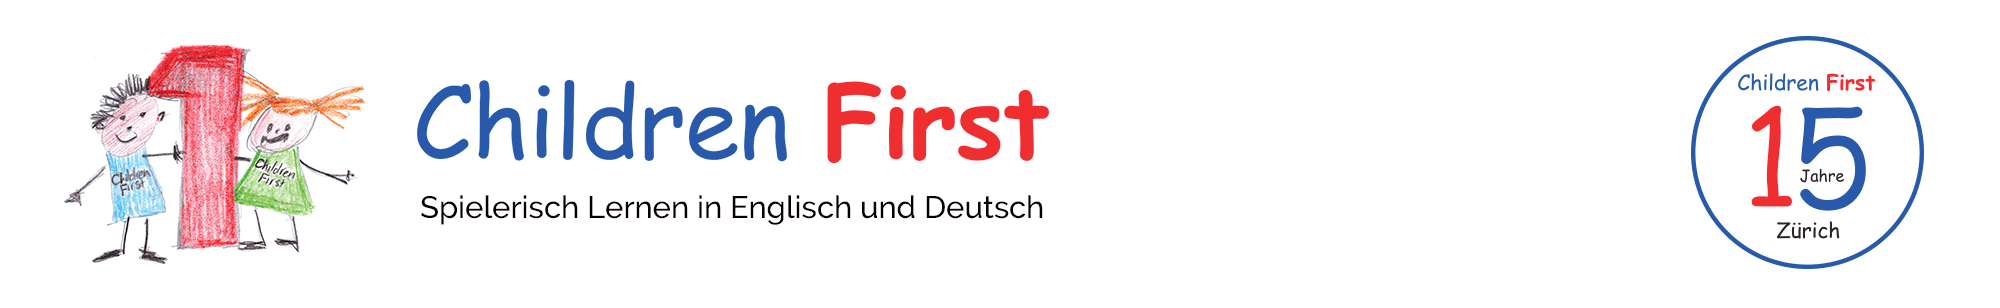 Internationale Vorschule, Krippe und Kindergarten in Zürich | Children First Association